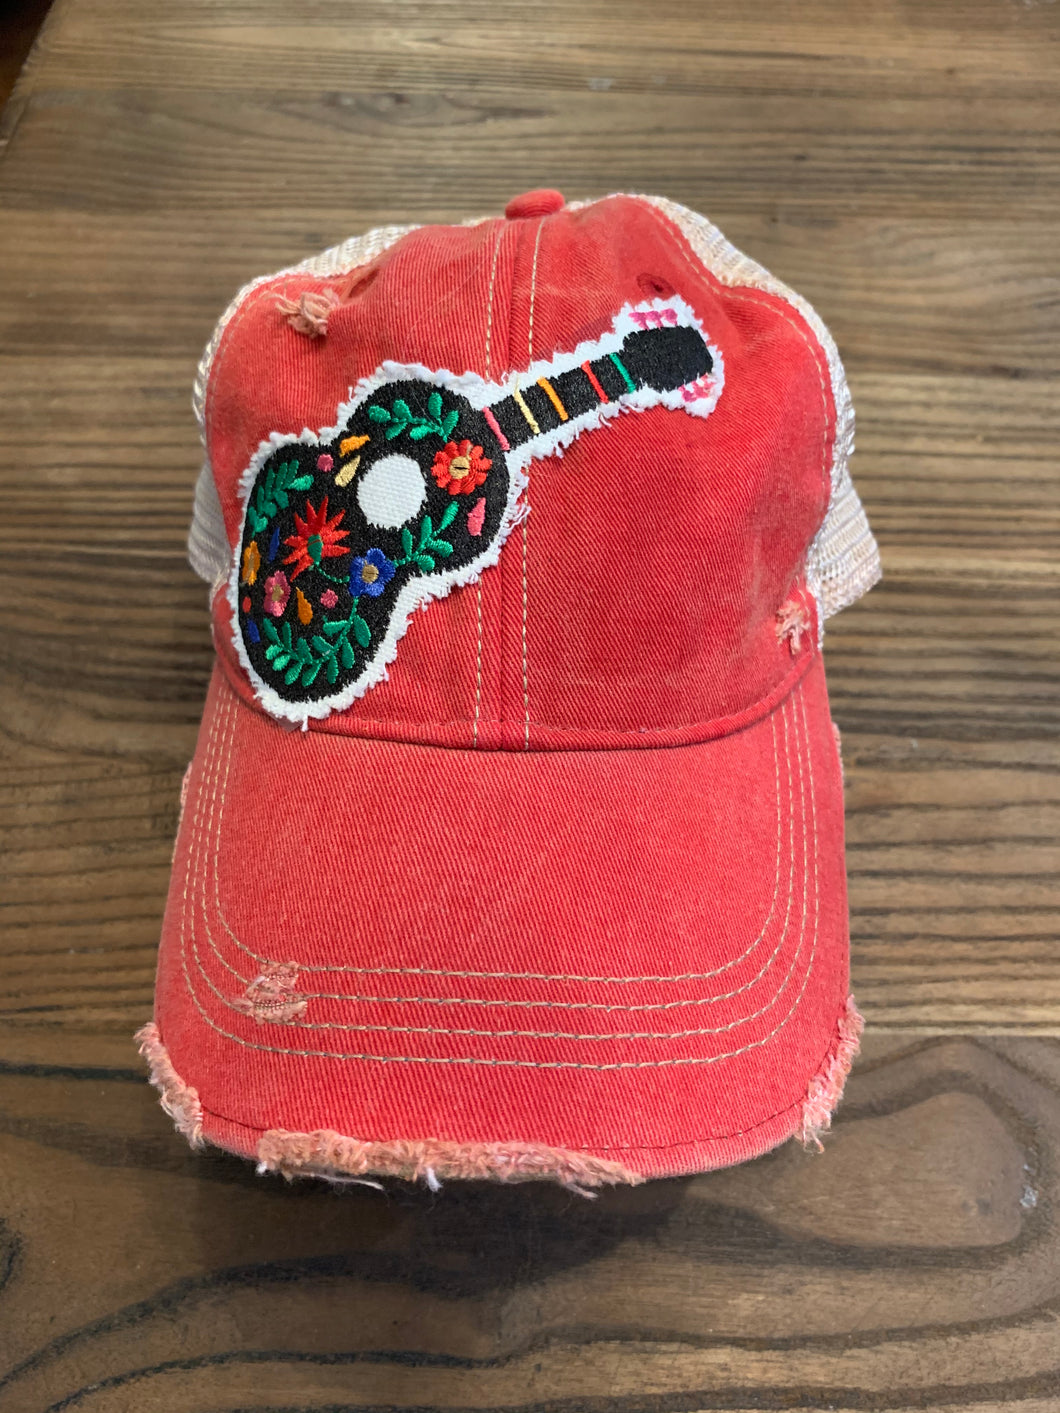 Floral guitar on vintage red hat